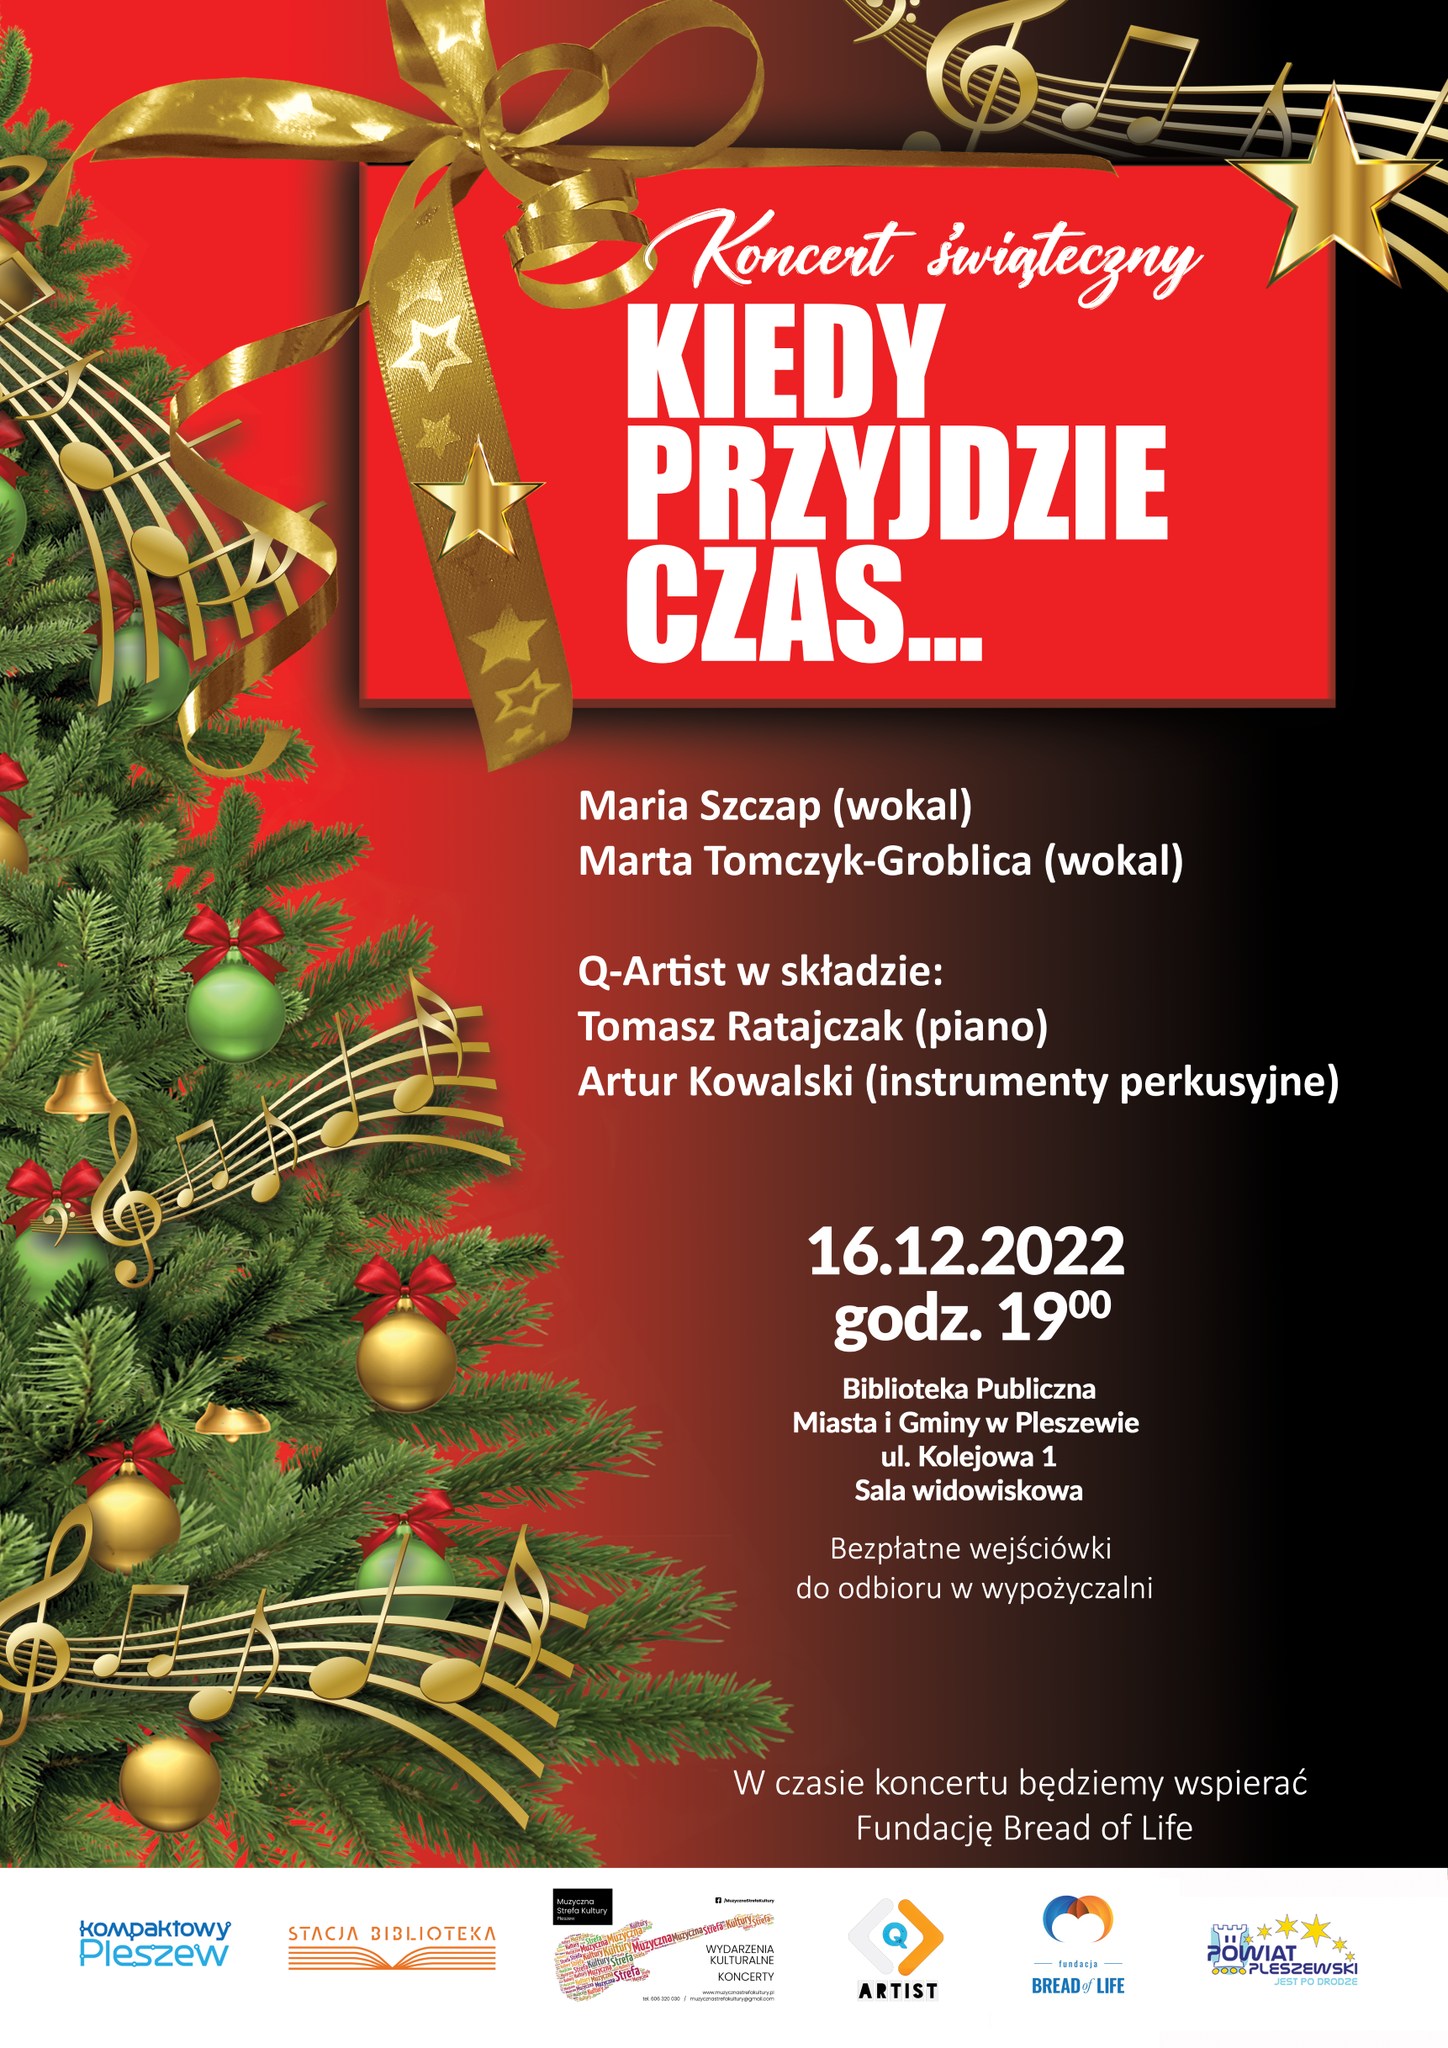 plakat koncertu świątecznego "Kiedy przyjdzie czas" odbywajacego się w Bibliotece Publicznej 16 grudnia 2022 o godzinie 19:00